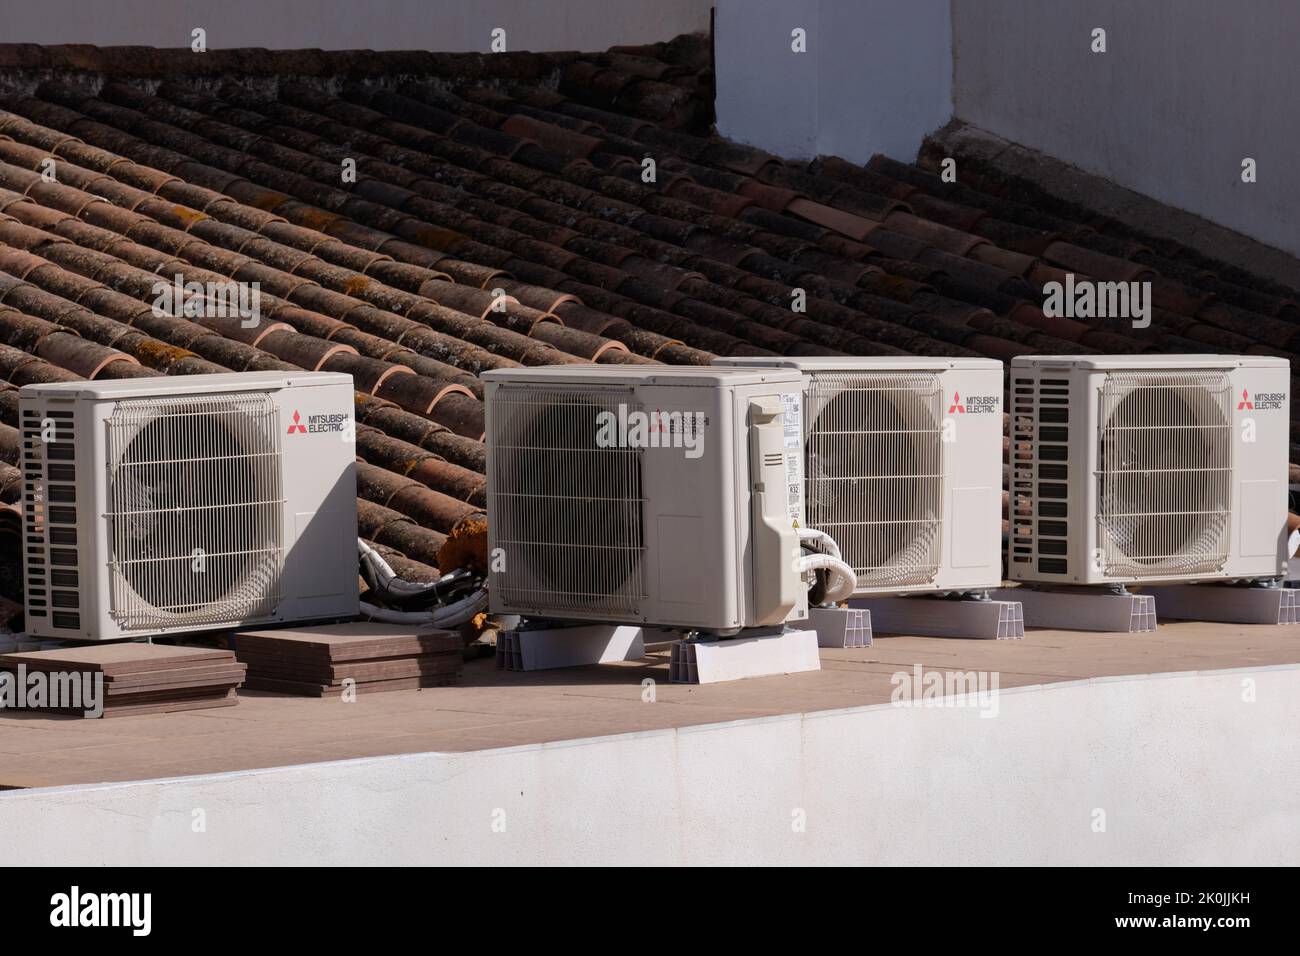 Mitsubishi unità elettriche di aria condizionata sul tetto di una casa. Provincia di Malaga, Spagna Foto Stock